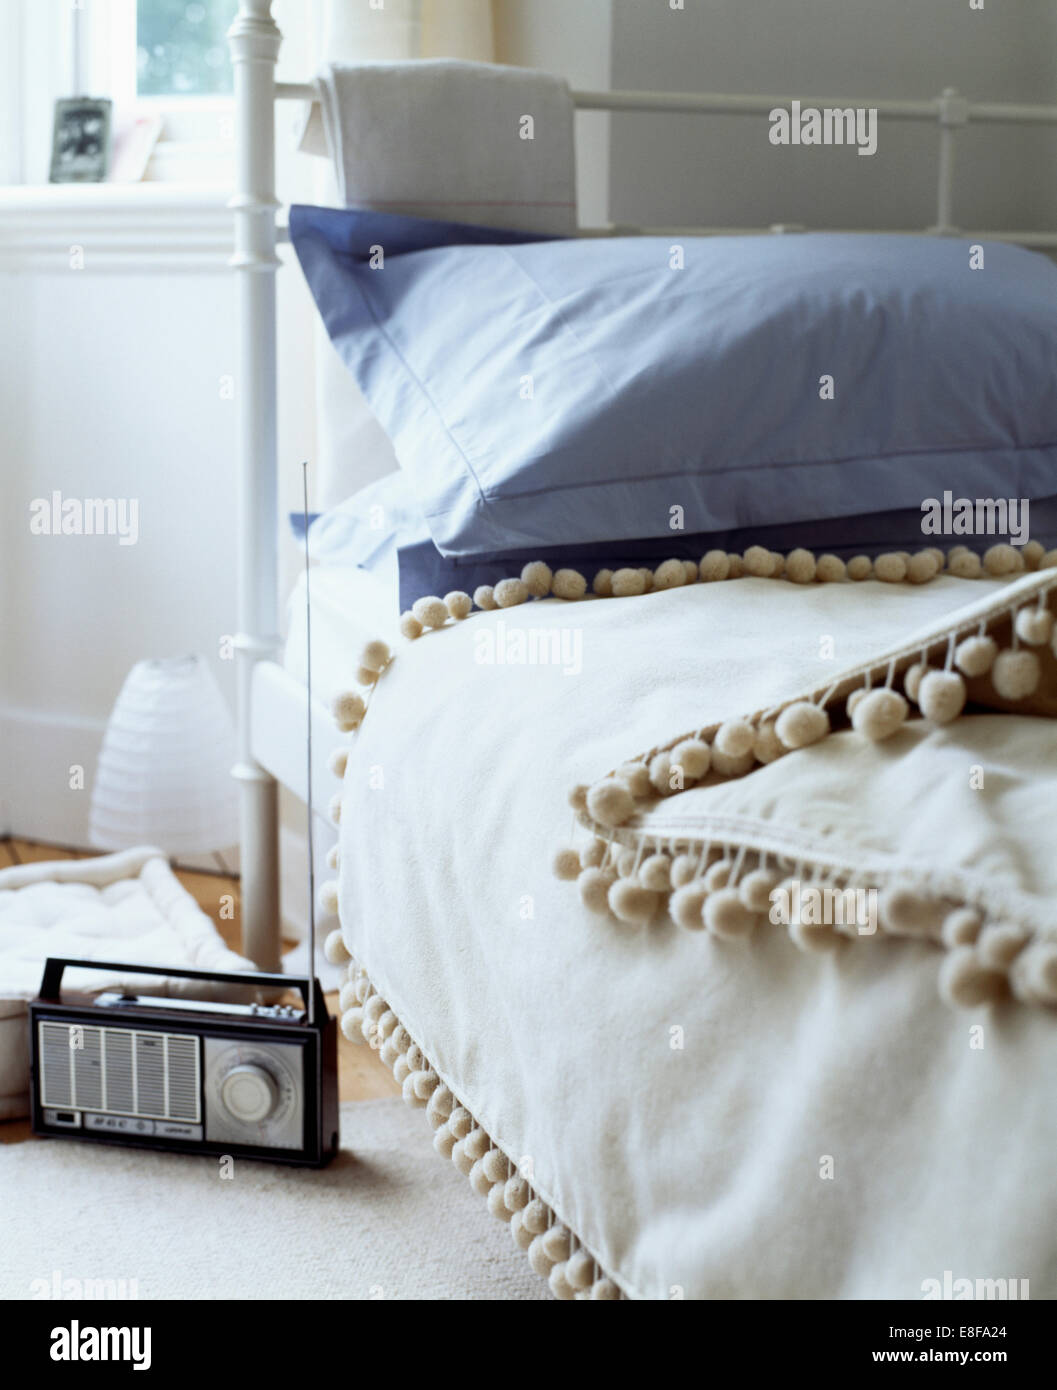 Radio am Boden neben Schmiedeeisen-Bett mit blauen Kissen und Bettdecke  weiße Bommel getrimmt Stockfotografie - Alamy